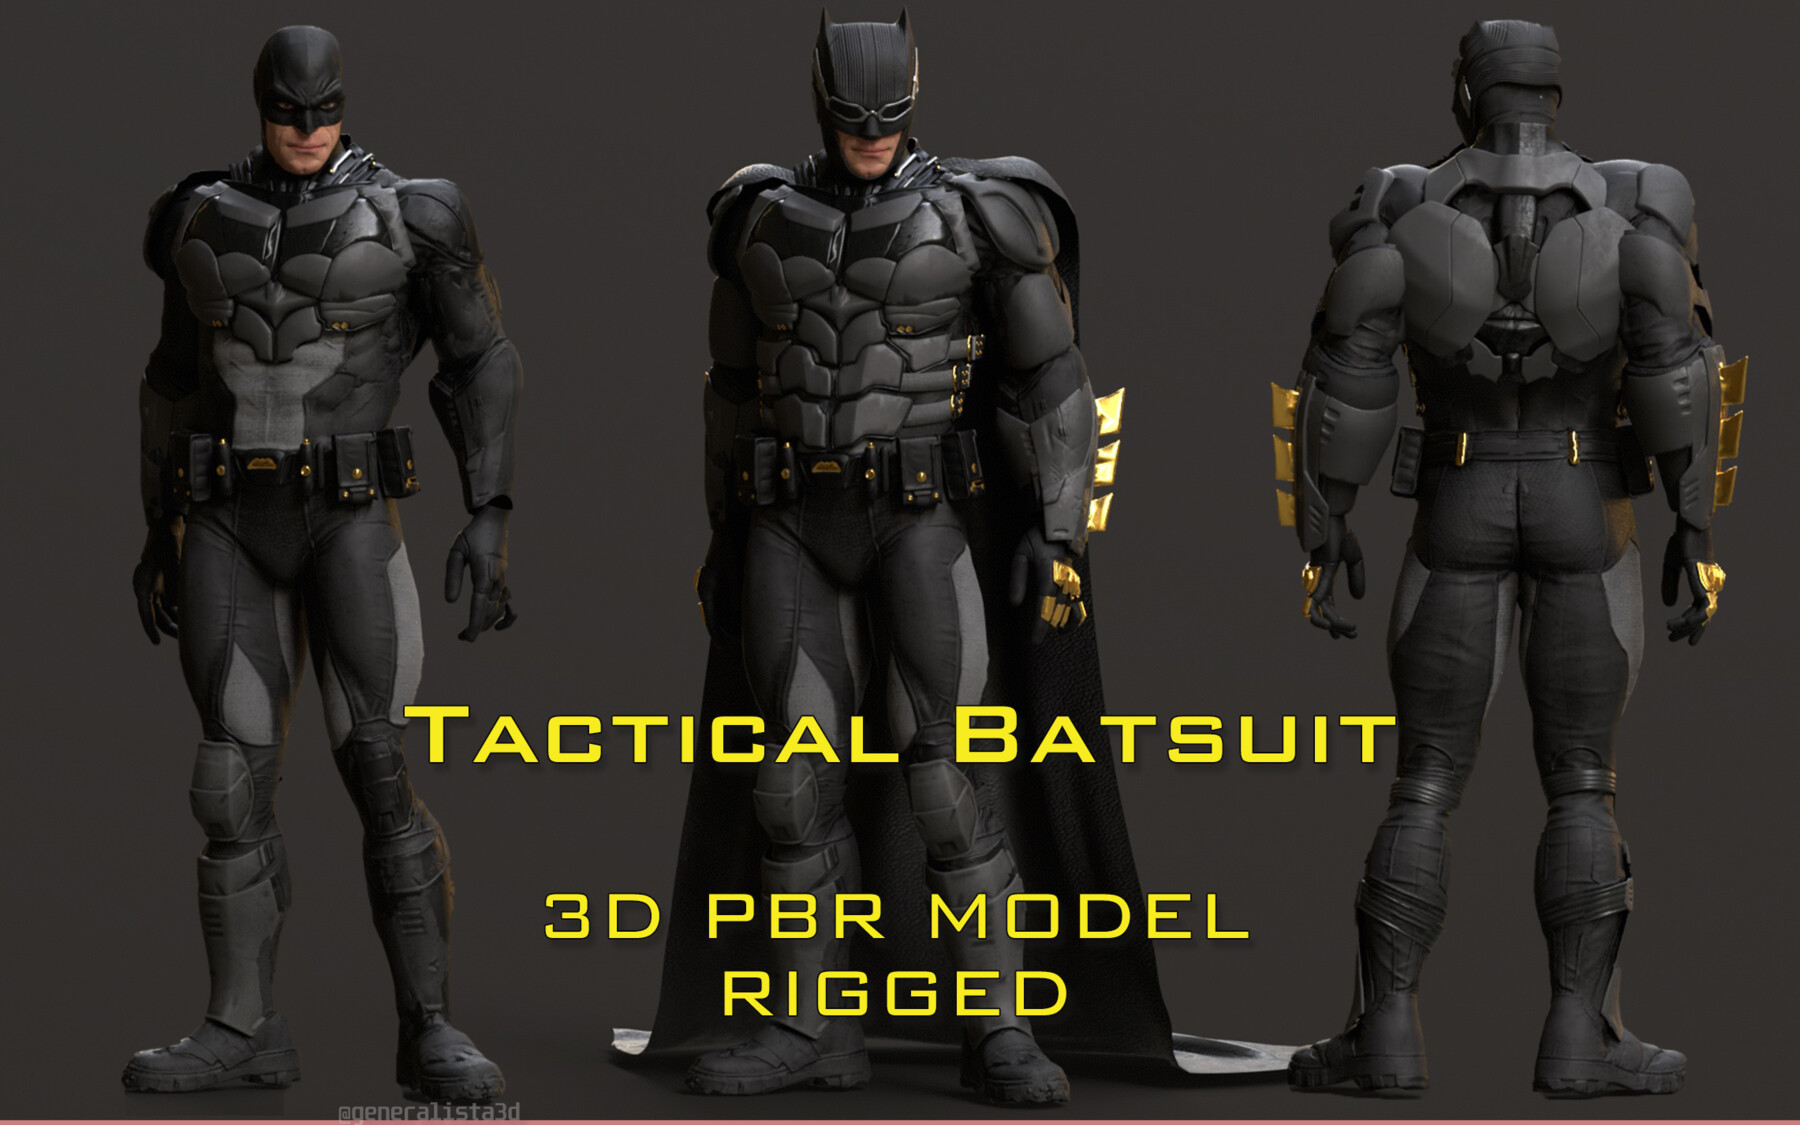 ArtStation - Justice League: Batman Tactical Suit